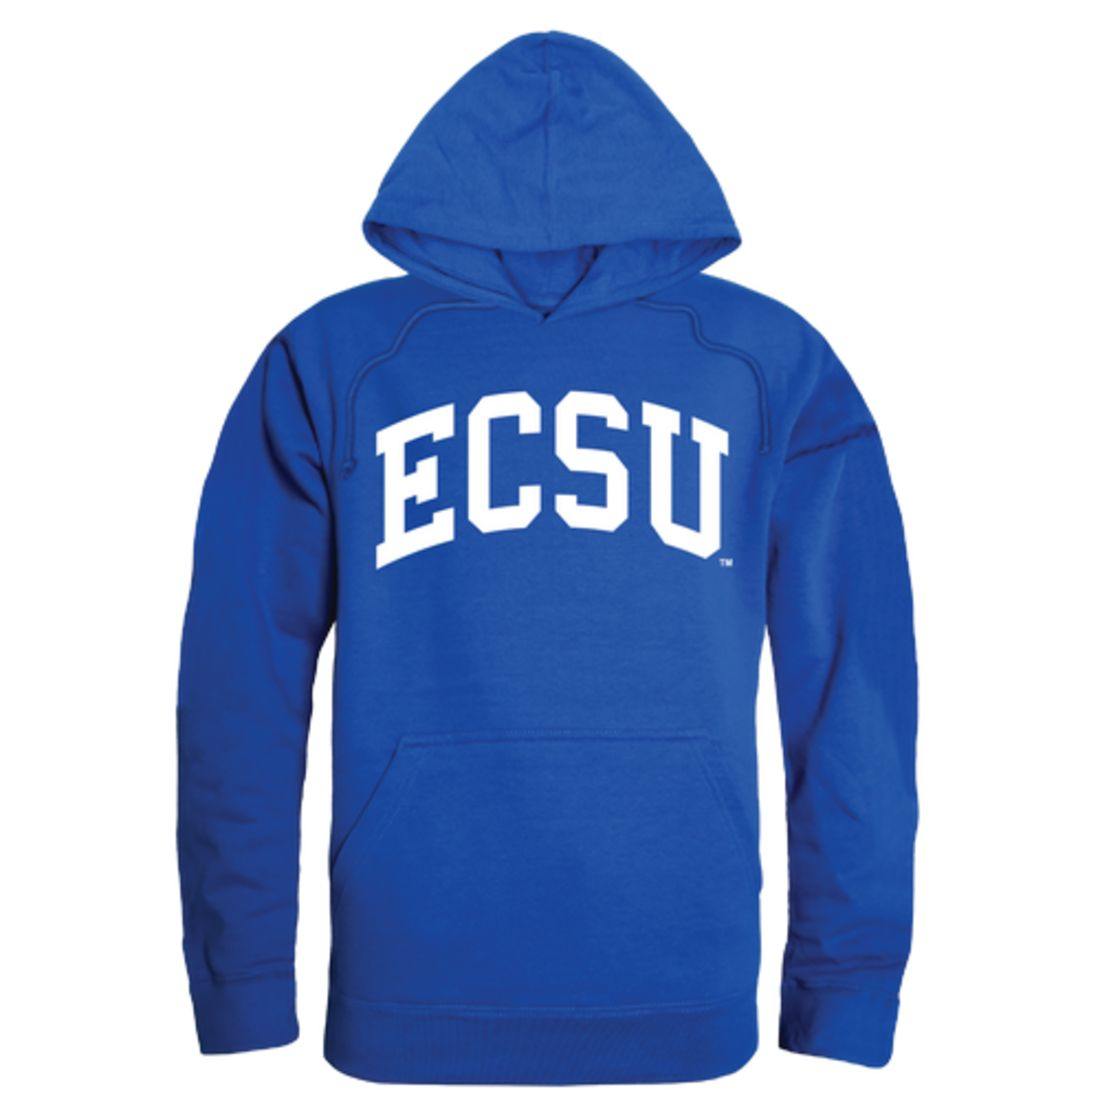 ECSU Elizabeth City State University Vikings College Hoodie Sweatshirt Royal-Campus-Wardrobe